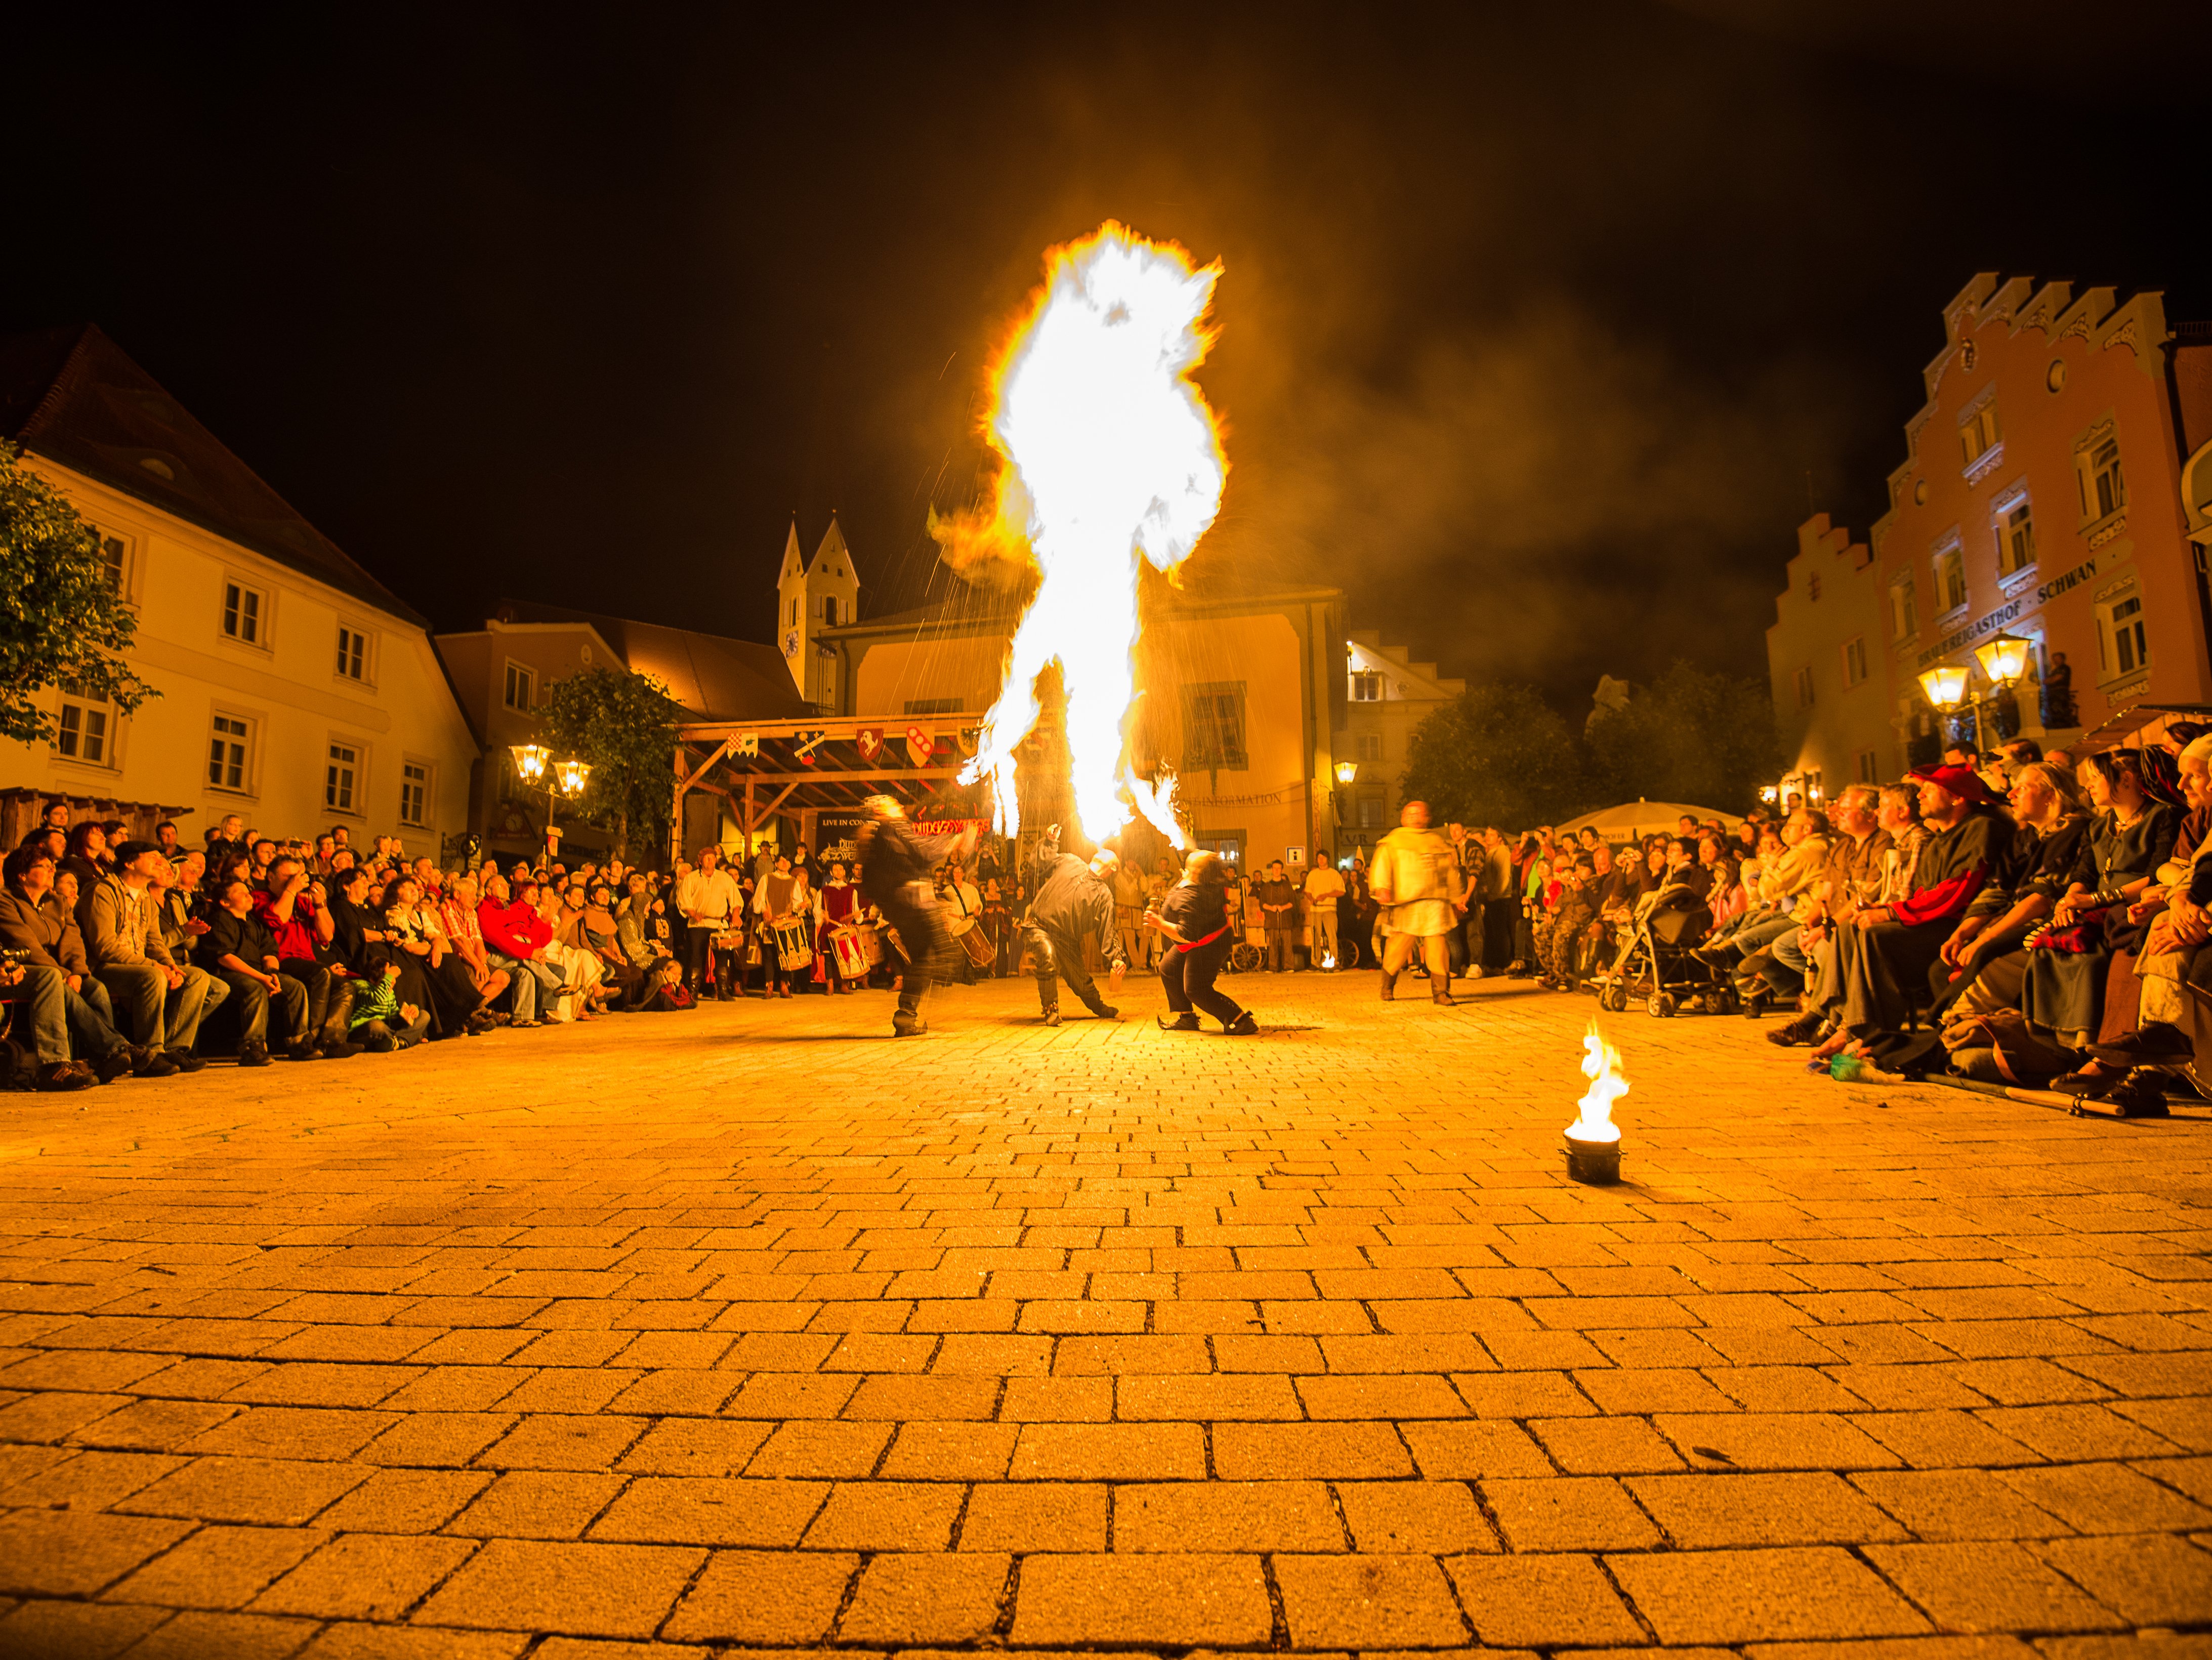 Auf diesem Bild sieht man eine mittelalterliche Feuershow am Marktplatz